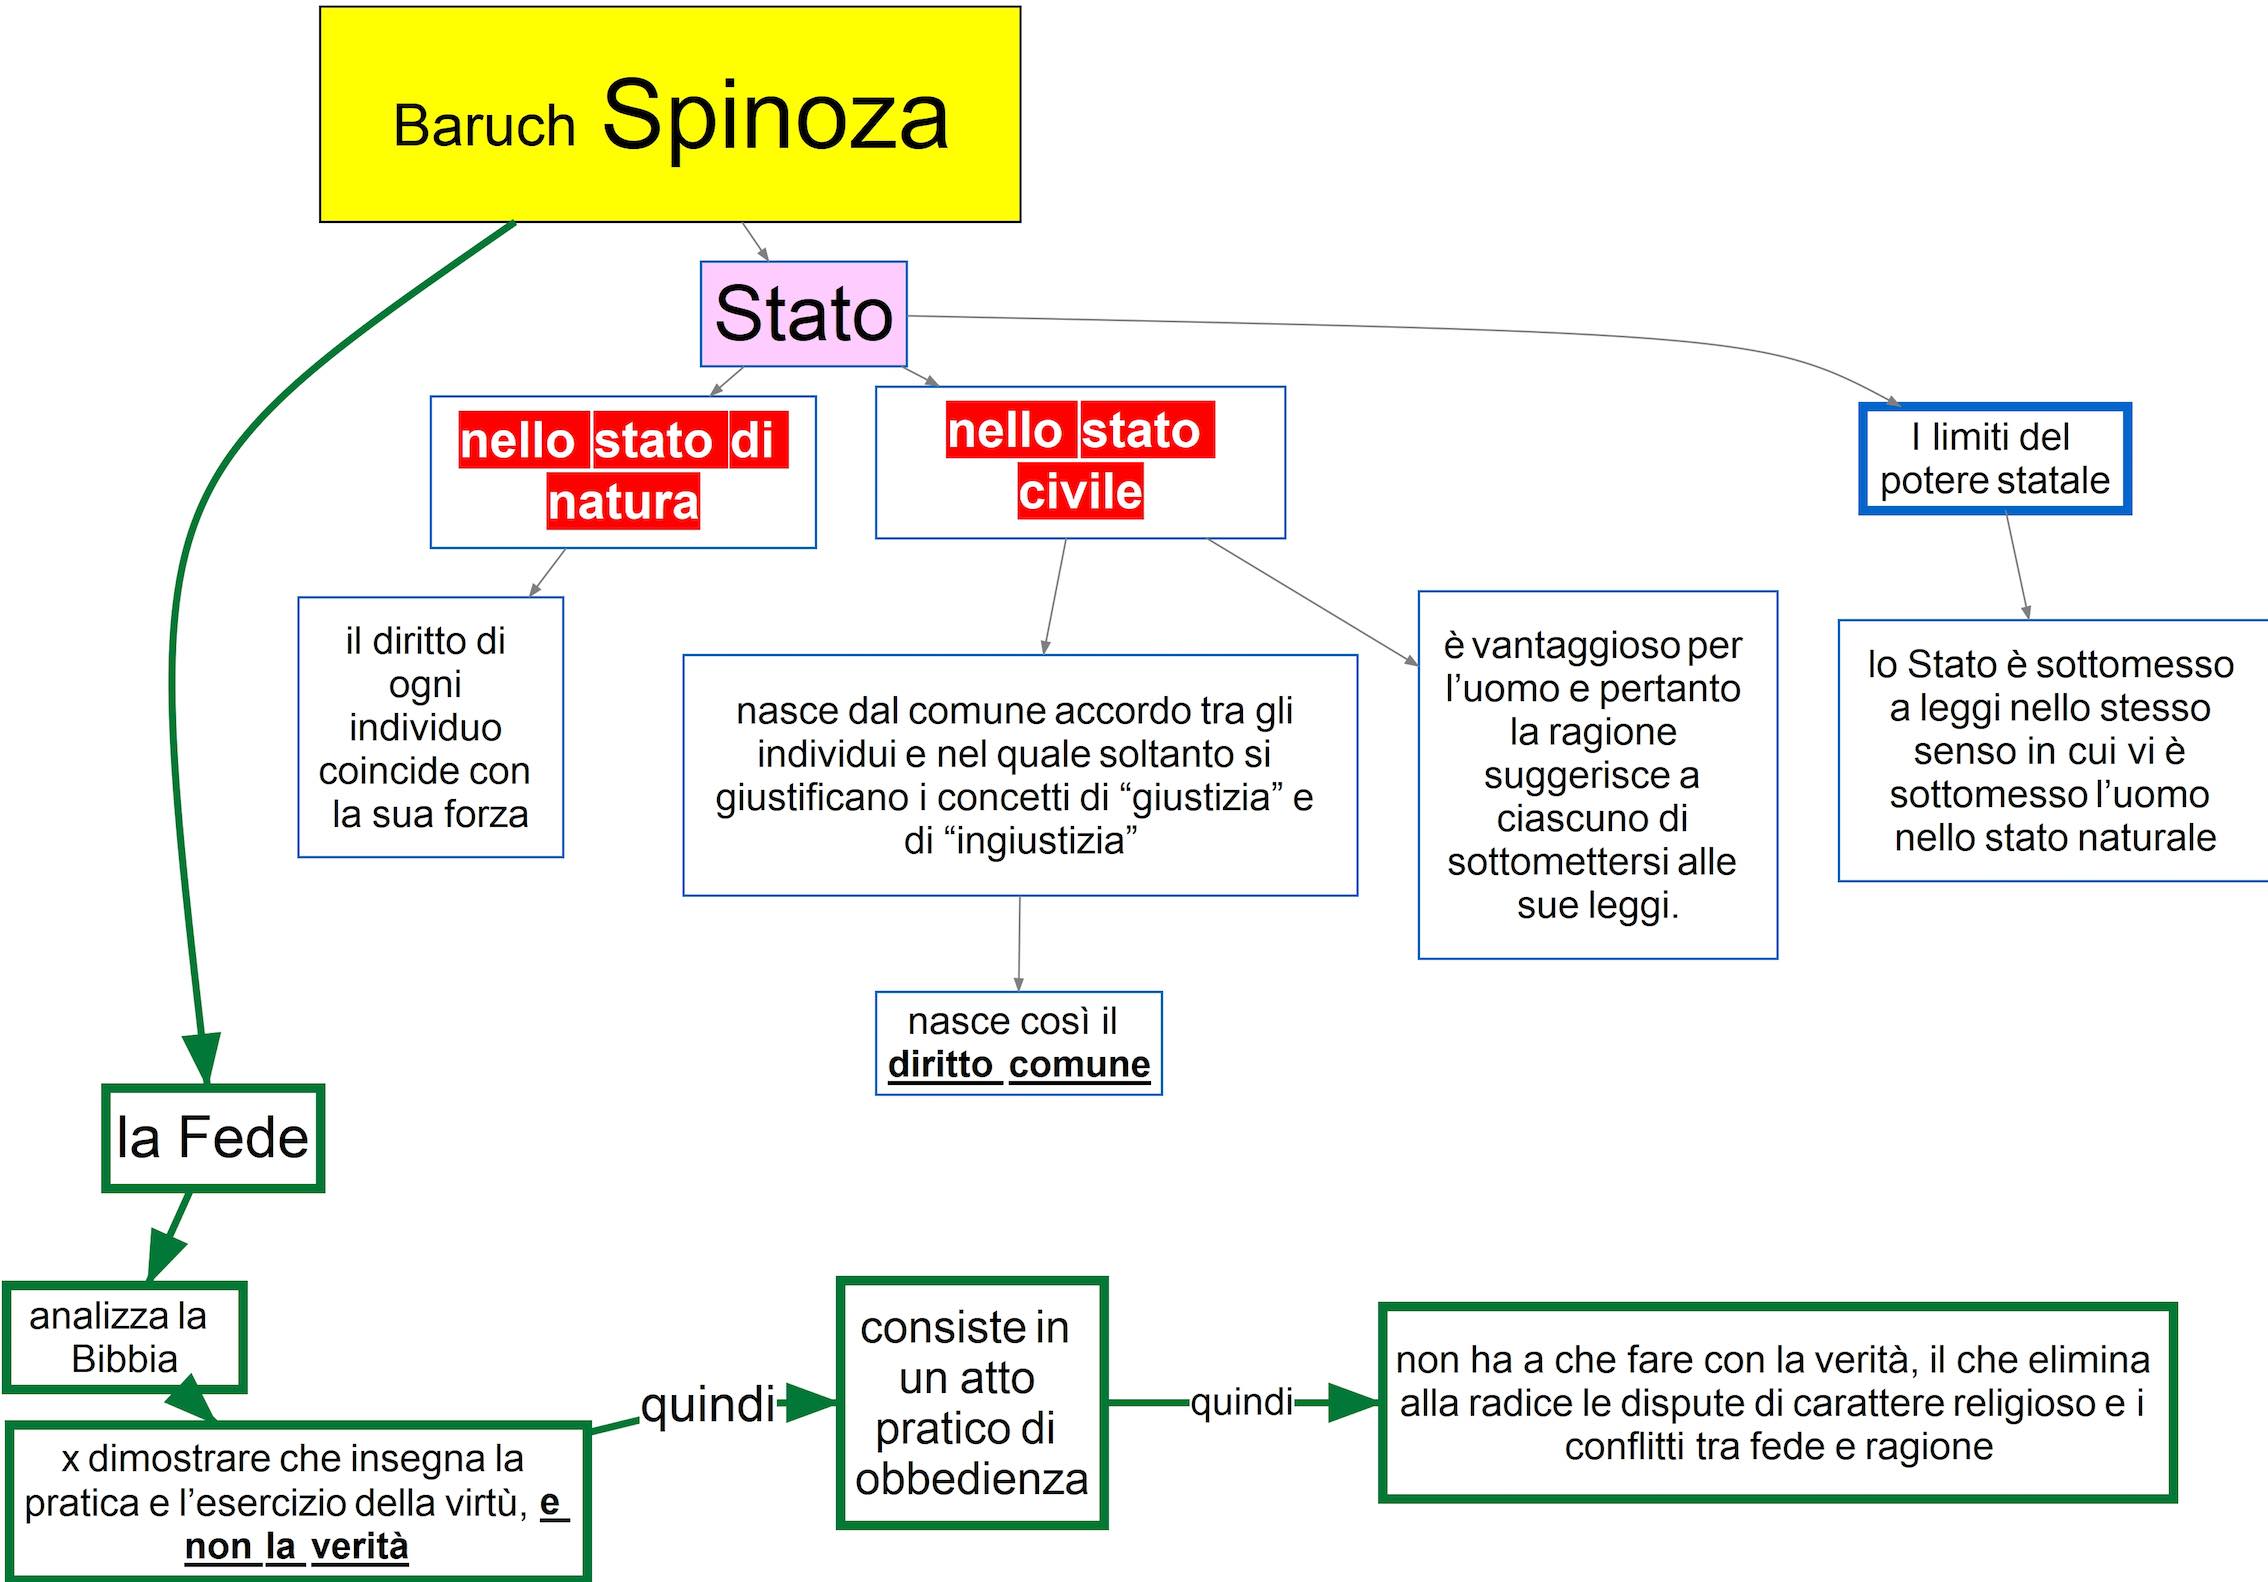 Baruch Spinoza 2